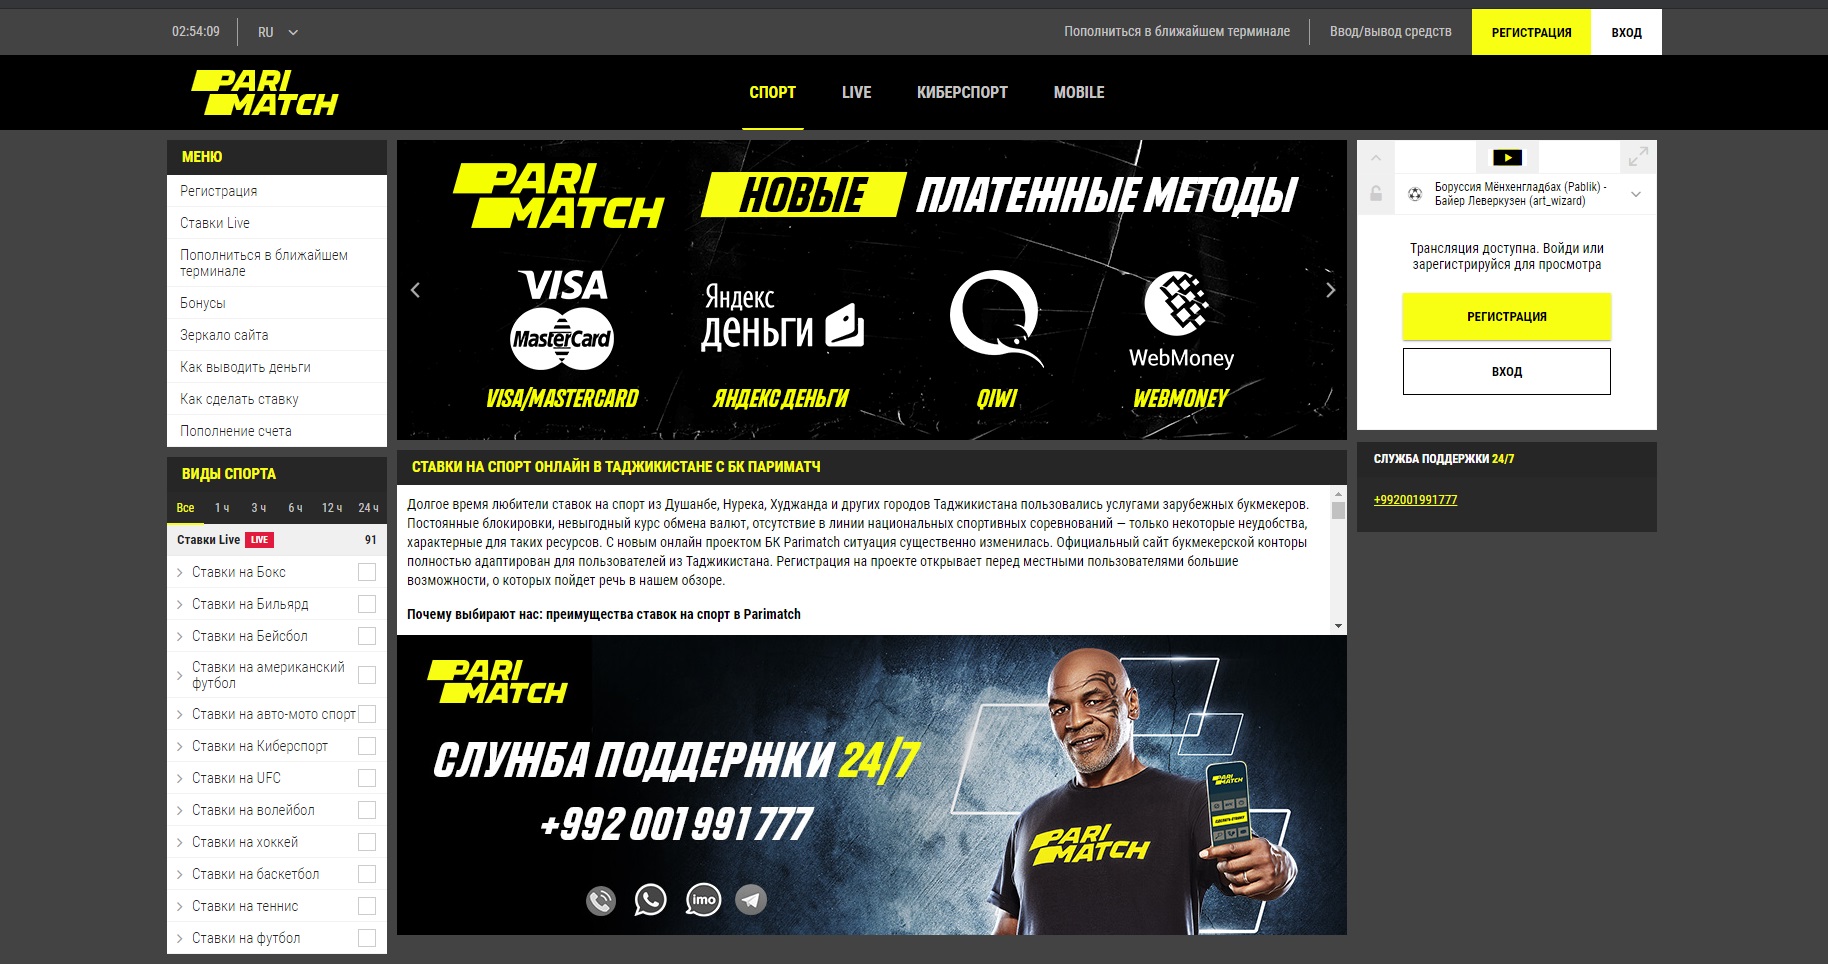 Леон ставки на спорт официальный или parimatch ru что лучше azino777 мобильная версия сайта бонус за регистрацию контроль честности рф